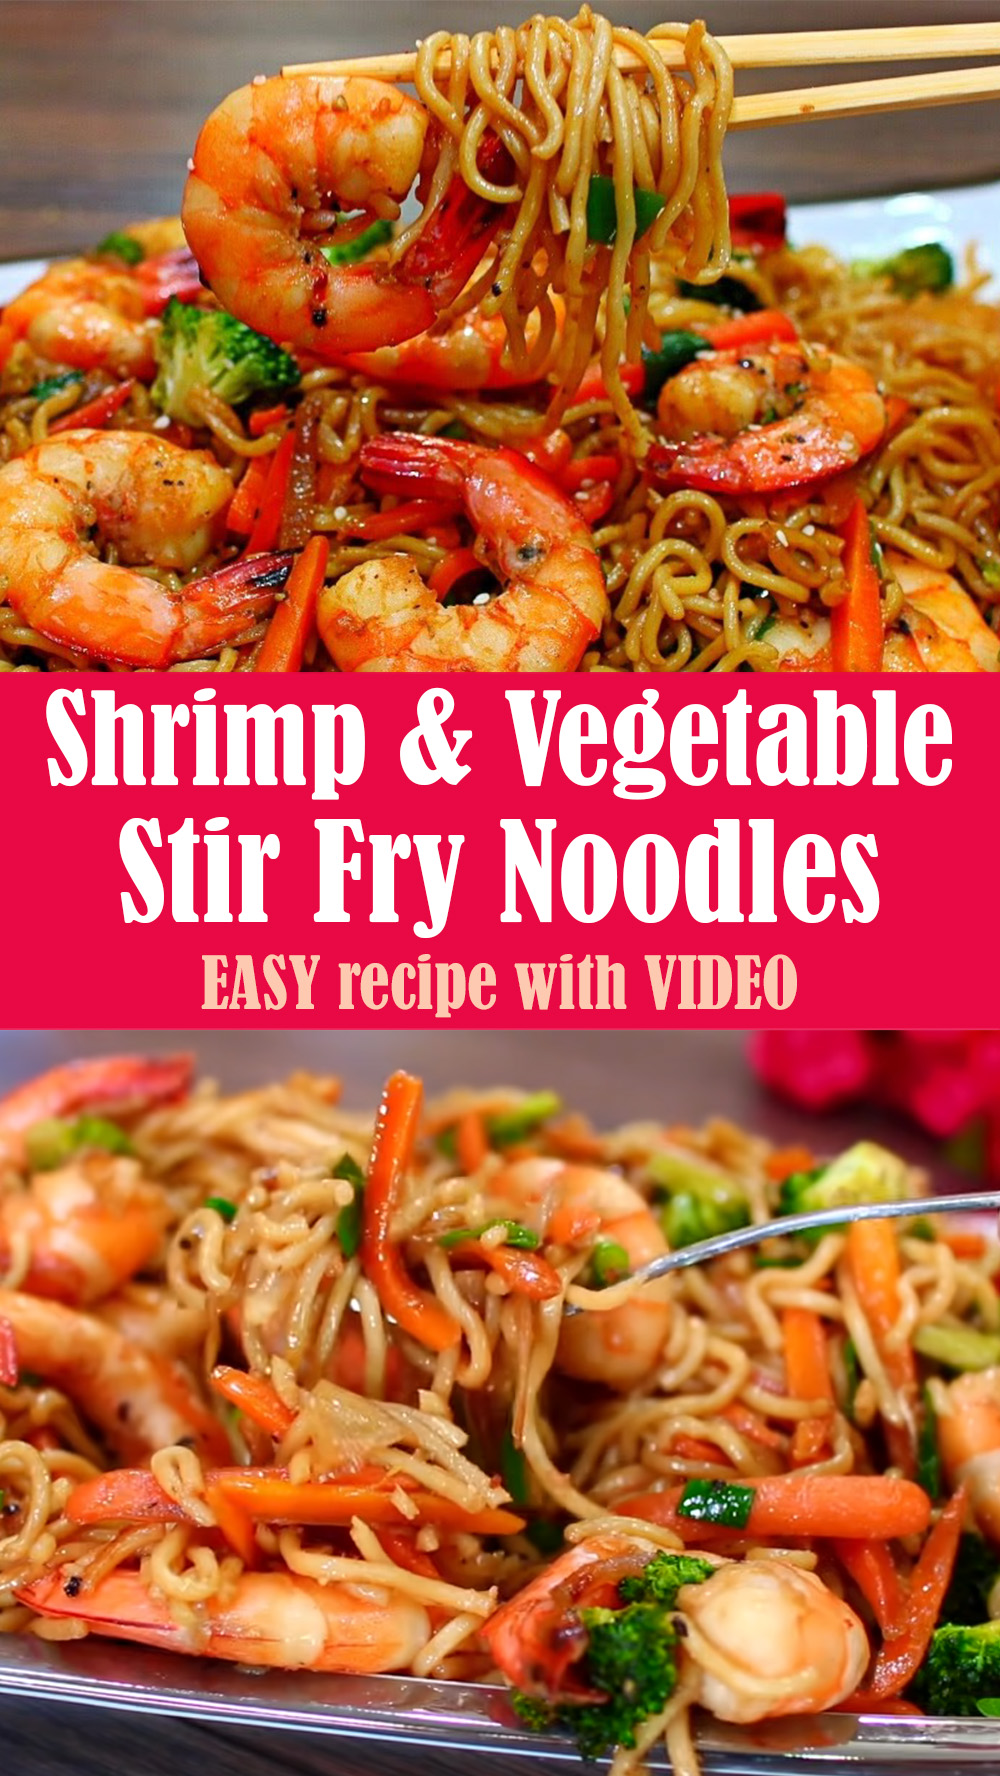 EASY Shrimp and Vegetable Stir Fry Noodles